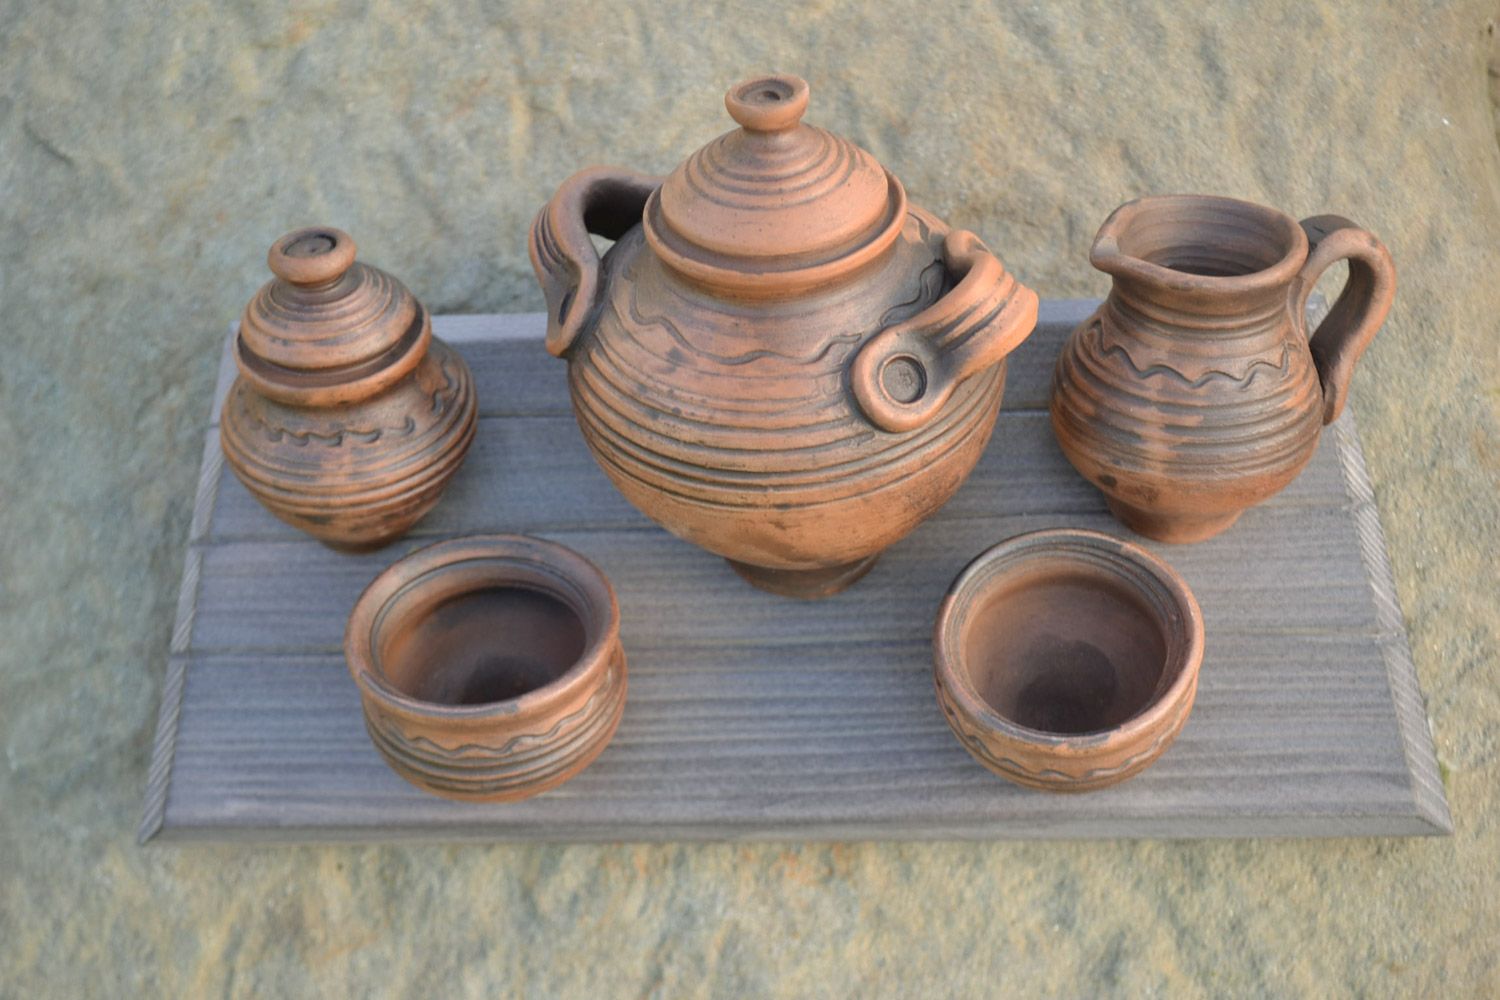 Этническое объемное панно в виде деревянной доски с глиняной посудой хэнд мэйд фото 1